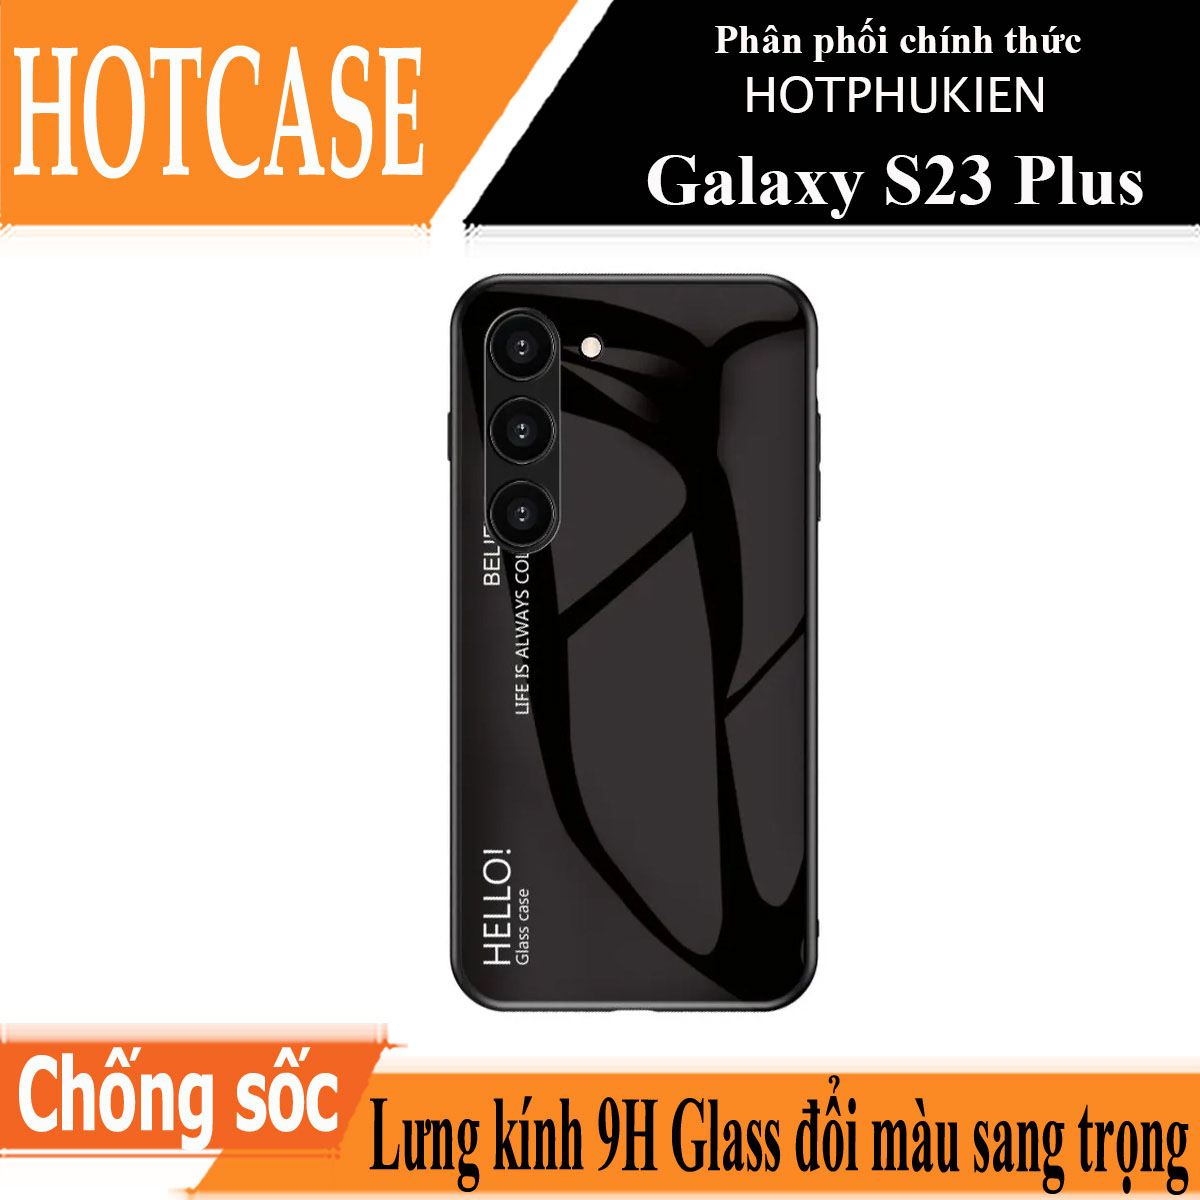 Ốp lưng kính cường lực cho Samsung Galaxy S23 Plus / S23+ hiệu HOTCASE Gradient Case chống sốc chống va đập, hiệu ứng gradient theo góc nhìn, chống sốc cực tốt, chất liệu cao cấp